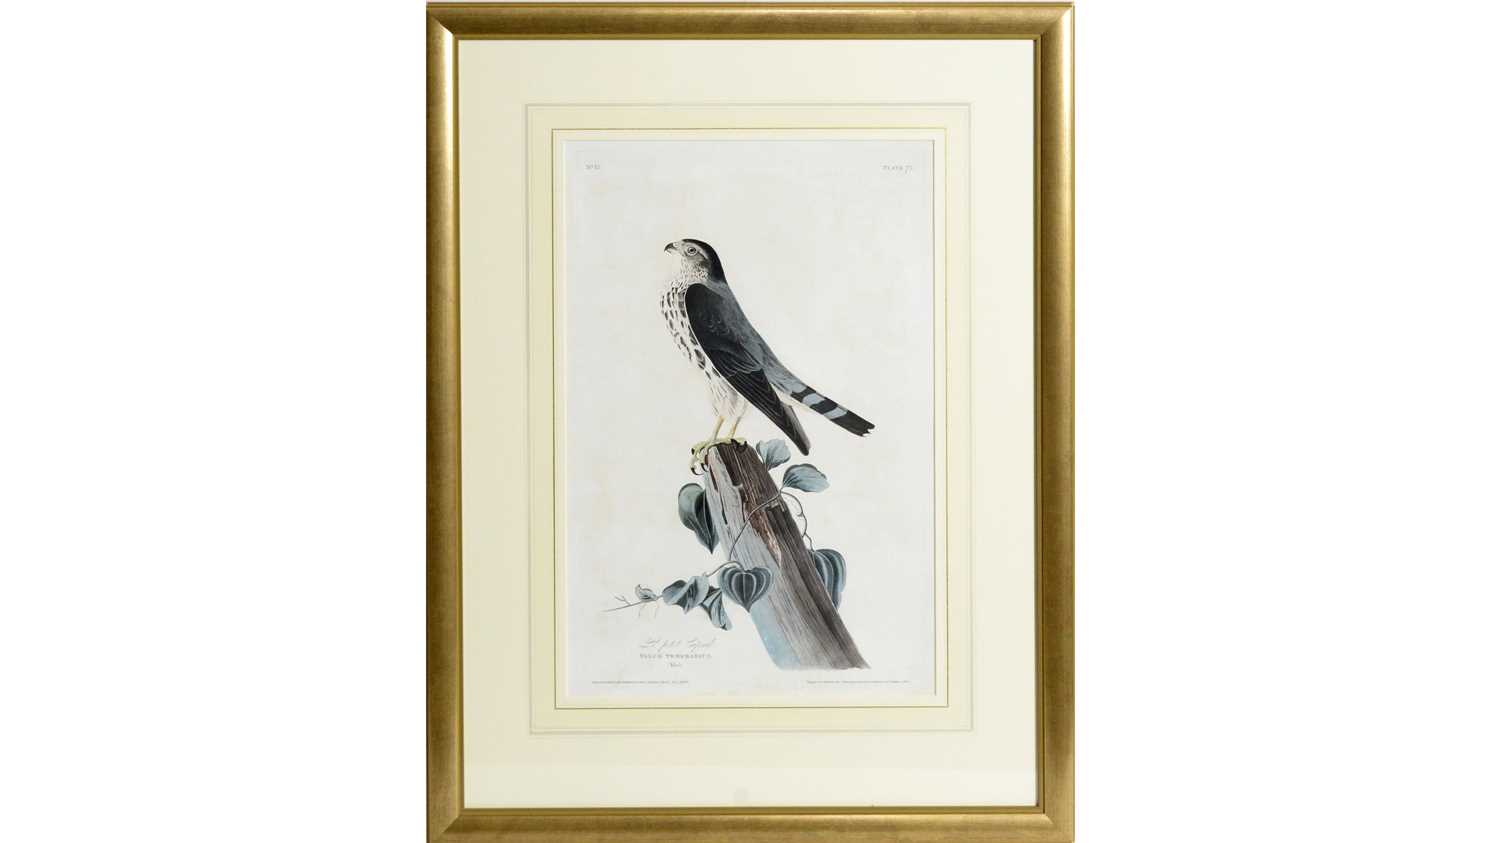 Lot 768 - John James Audubon - Le Petit Caporal, engraving